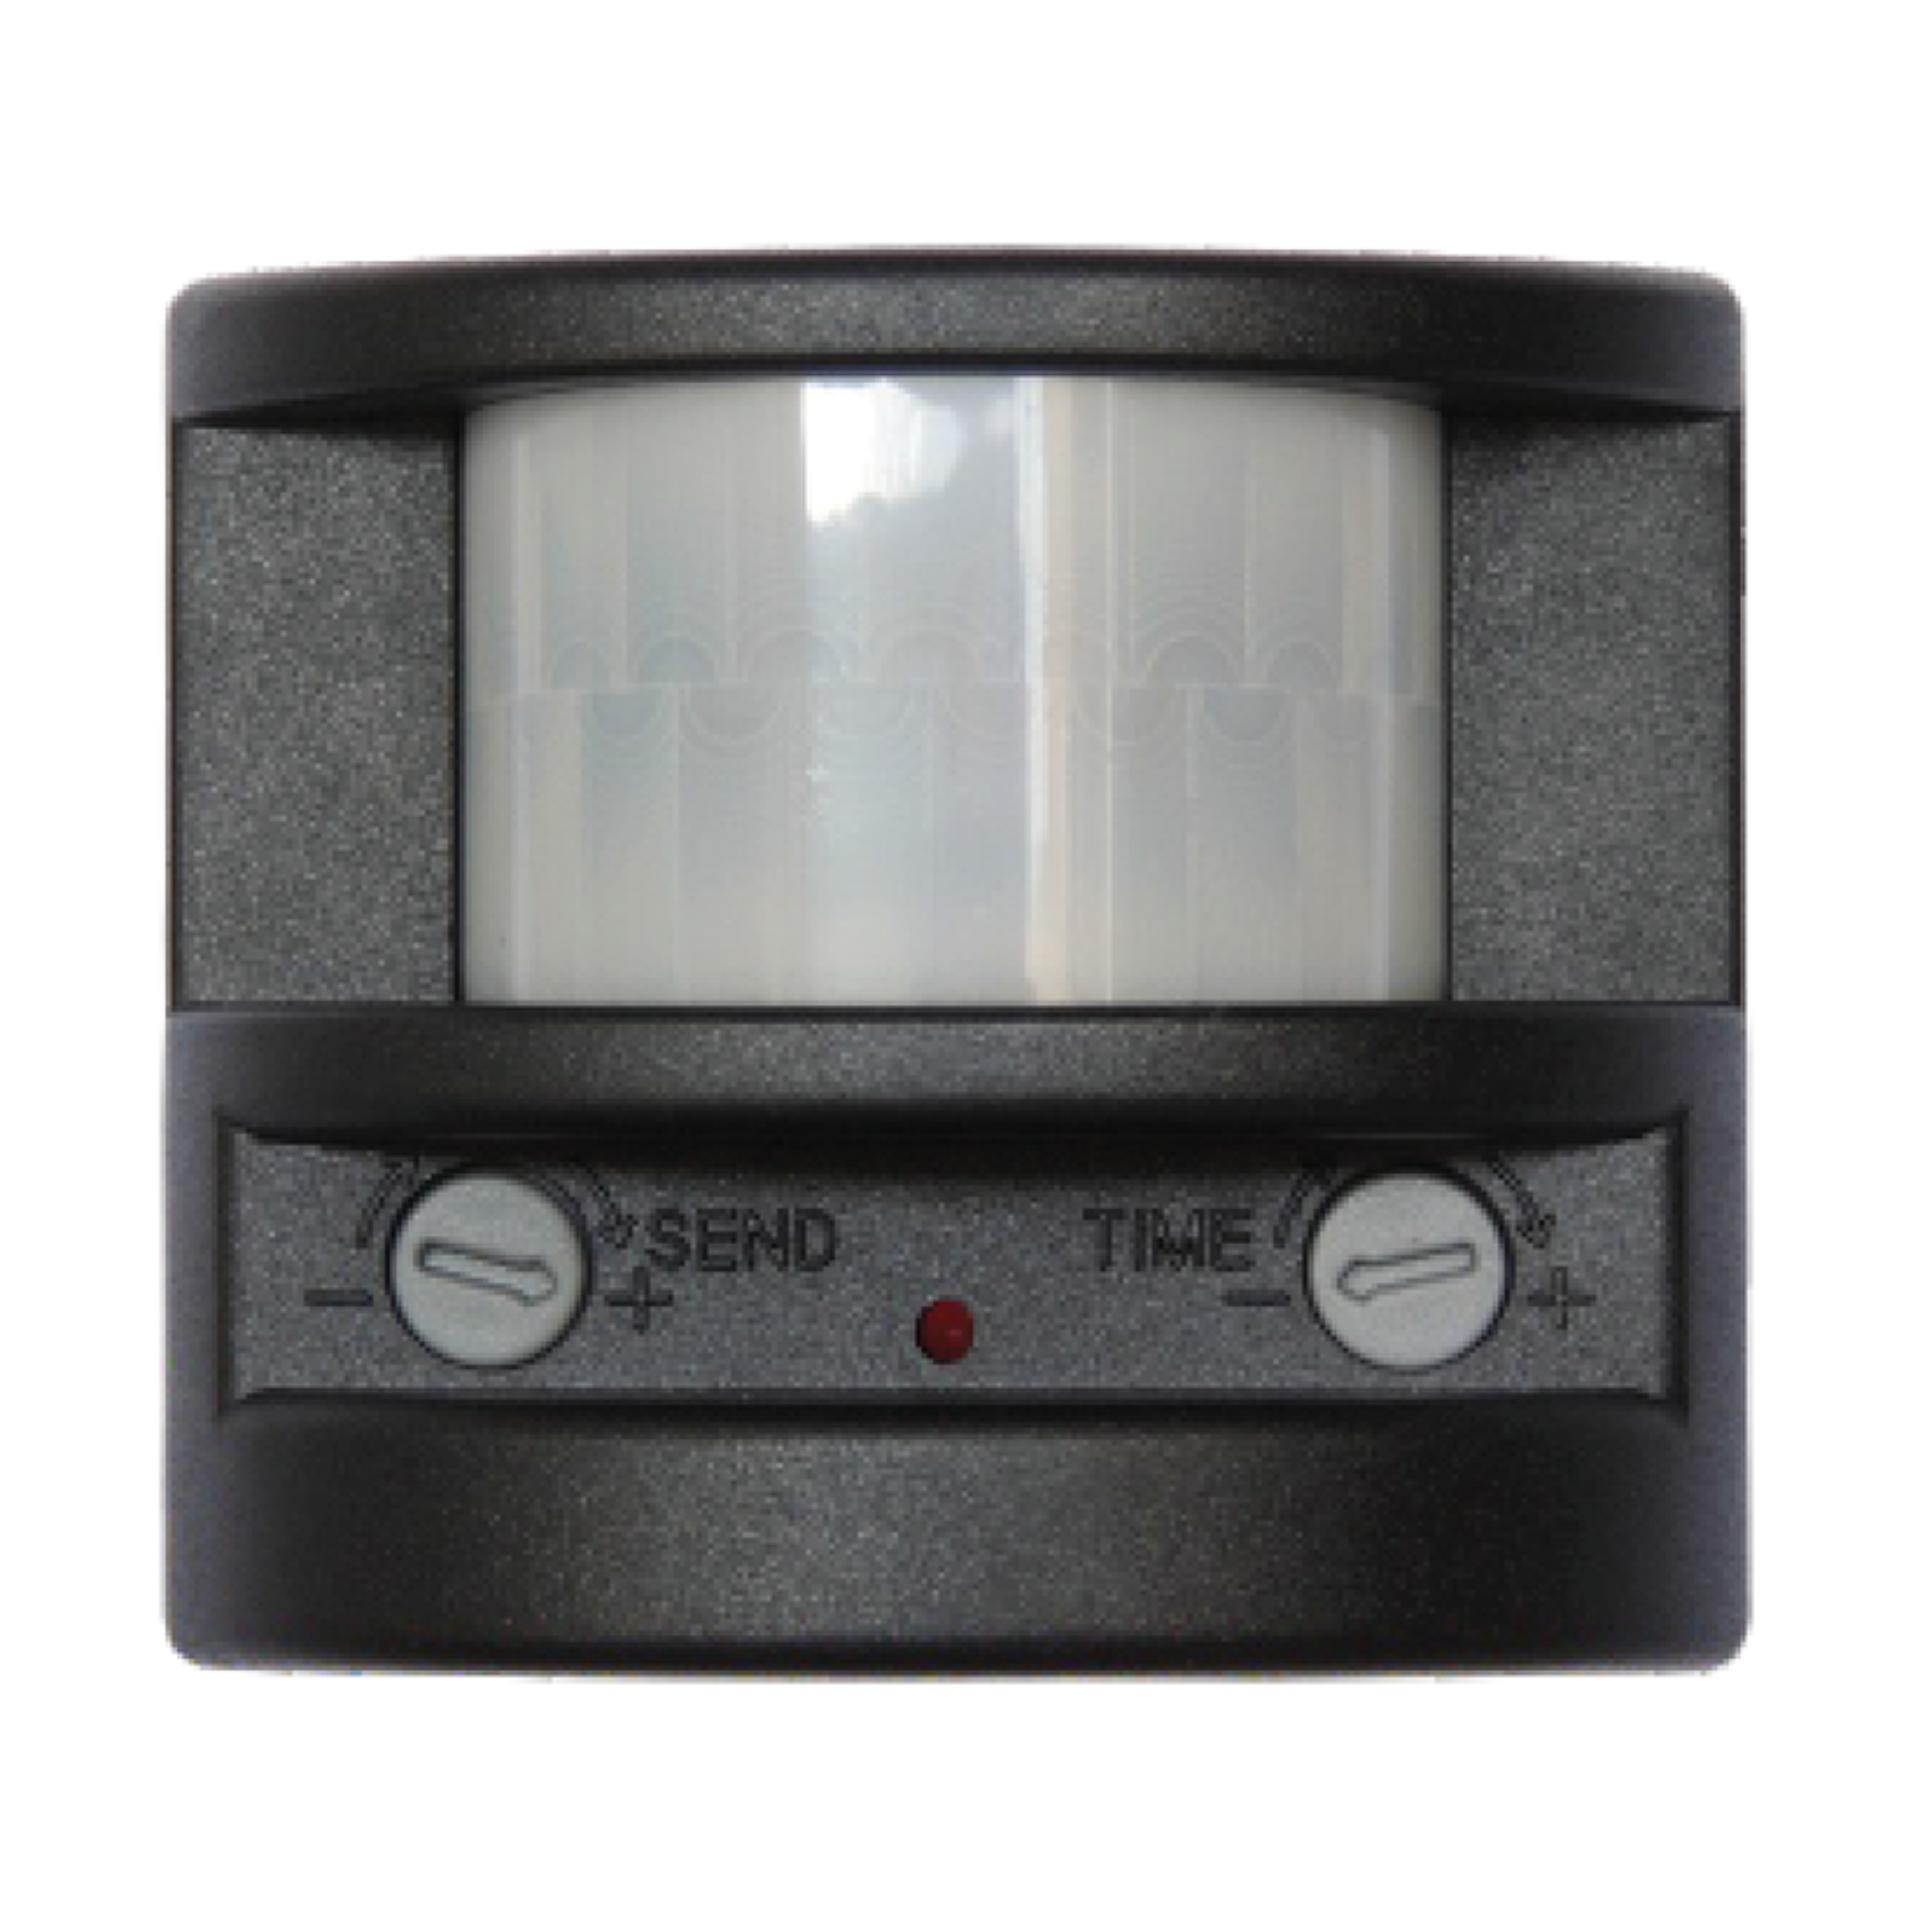 Cảm biến báo động và bật đèn tự động KS-307